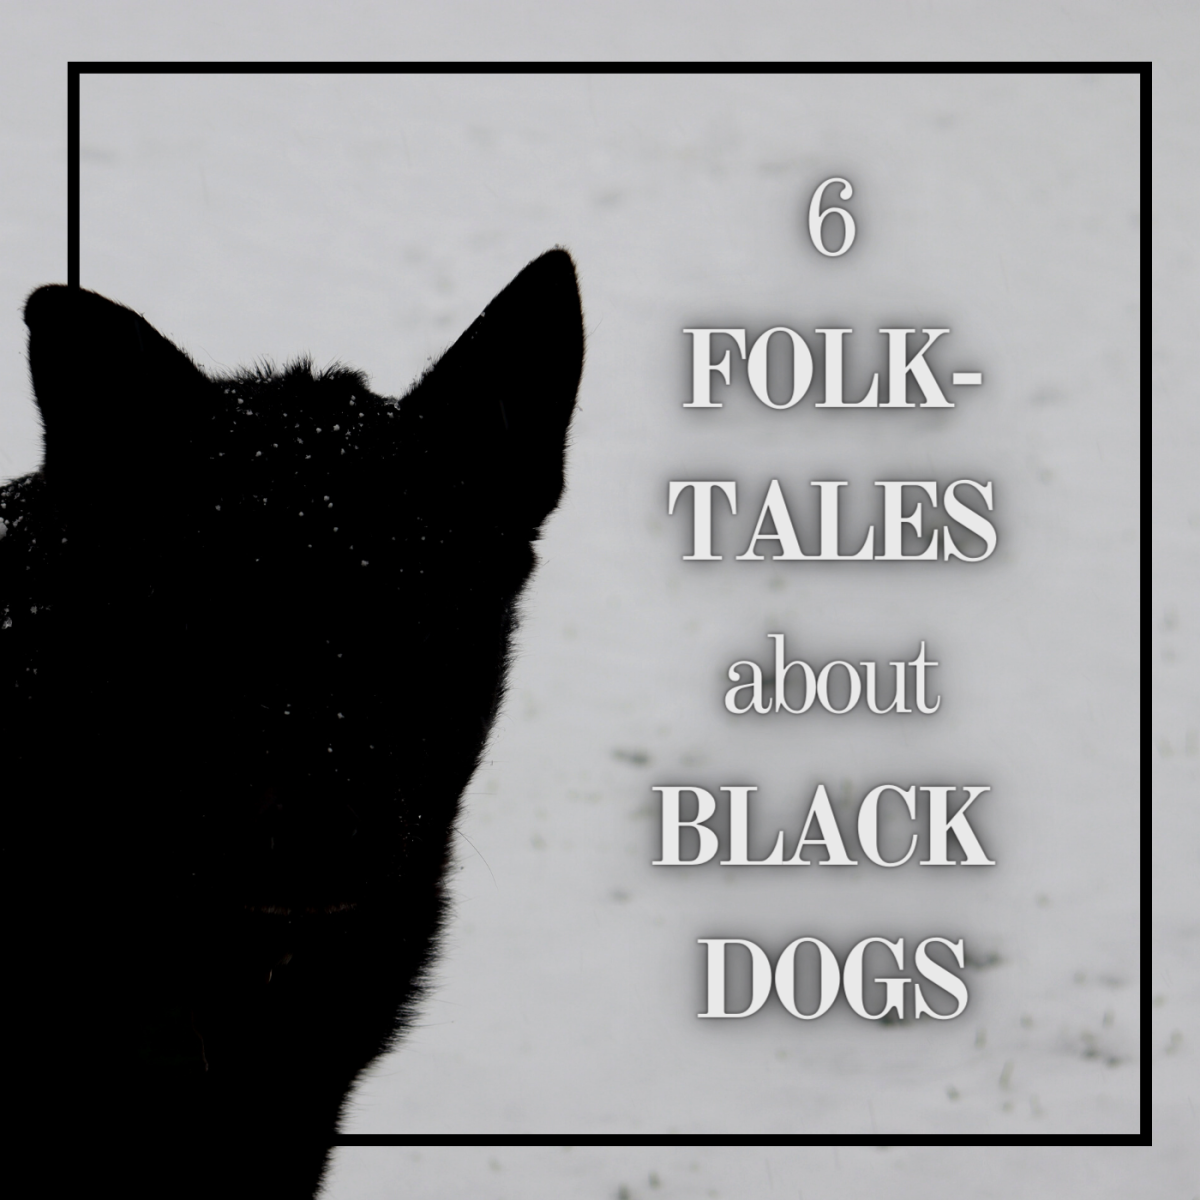 这篇文章讨论了6个关于不列颠群岛和其他地方神秘黑狗的有趣故事。往下读，找到你最喜欢的狗的民间故事。